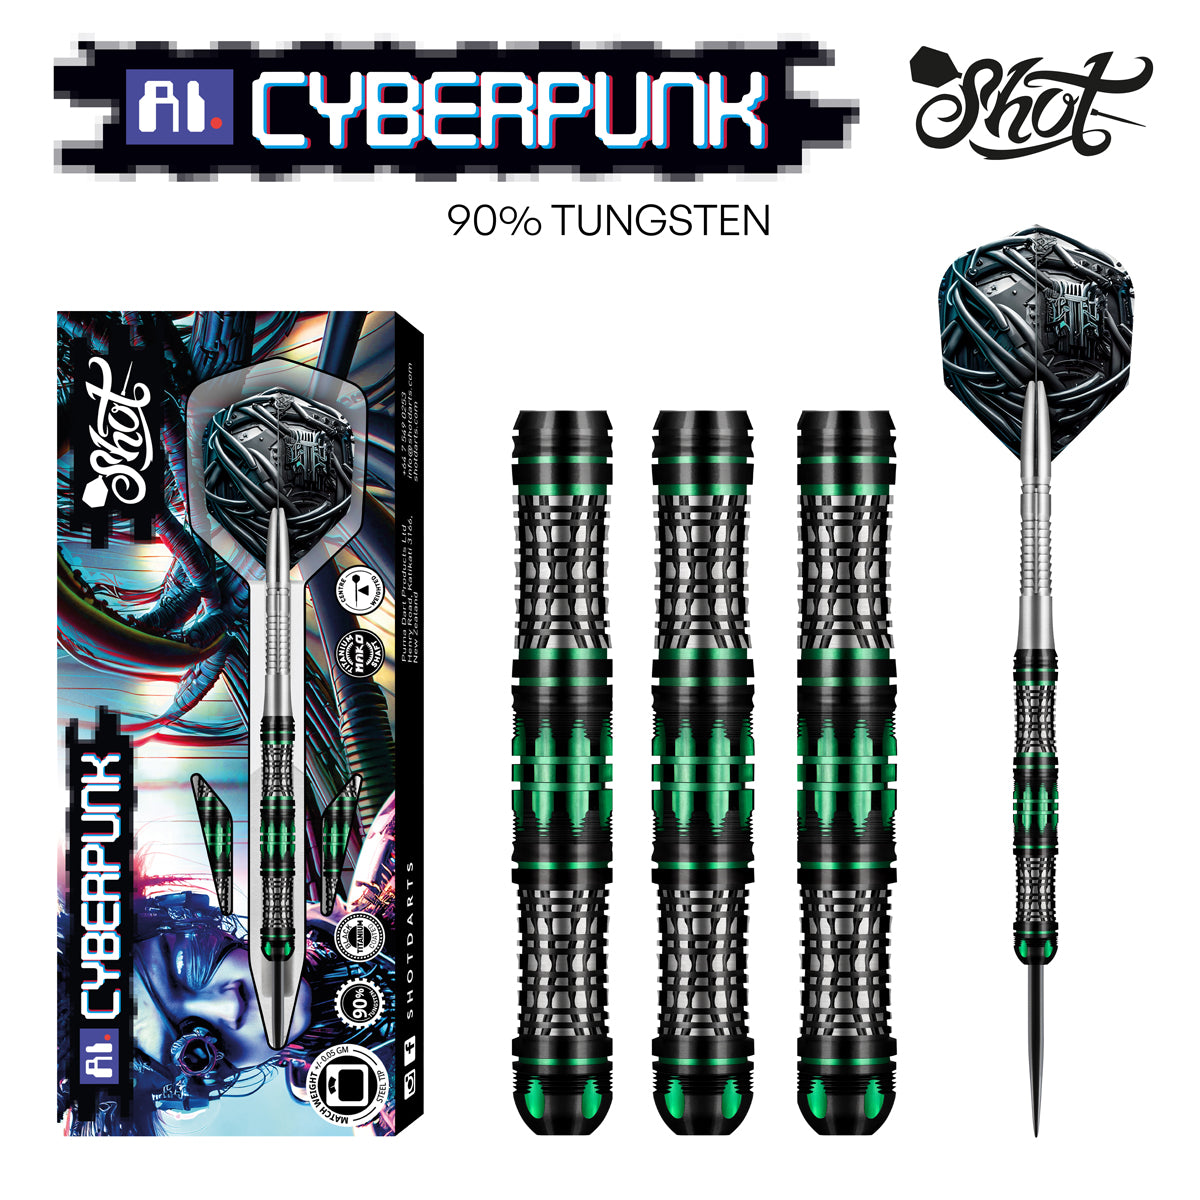 Shot AI Cyberpunk Steel Tip Dart Set 90% Tungsten Barrels 25g